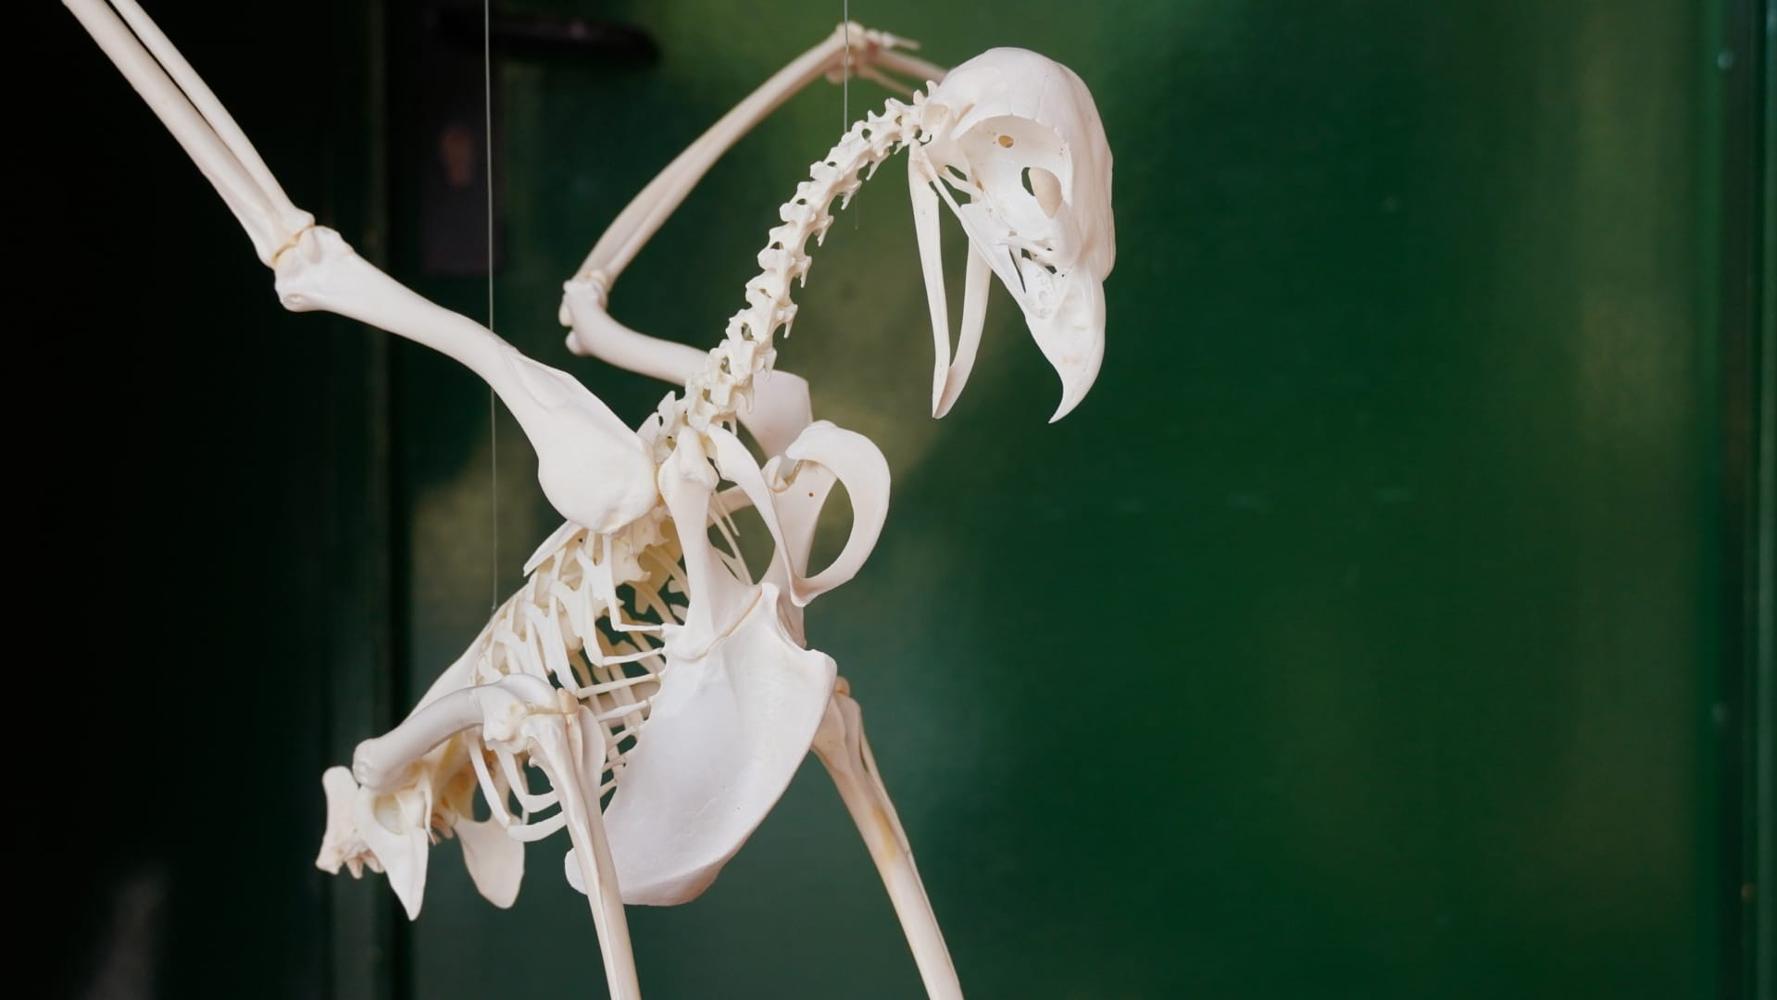 La reconstrucció d’un esquelet d’au serveix als alumnes per estudiar els ecosistemes